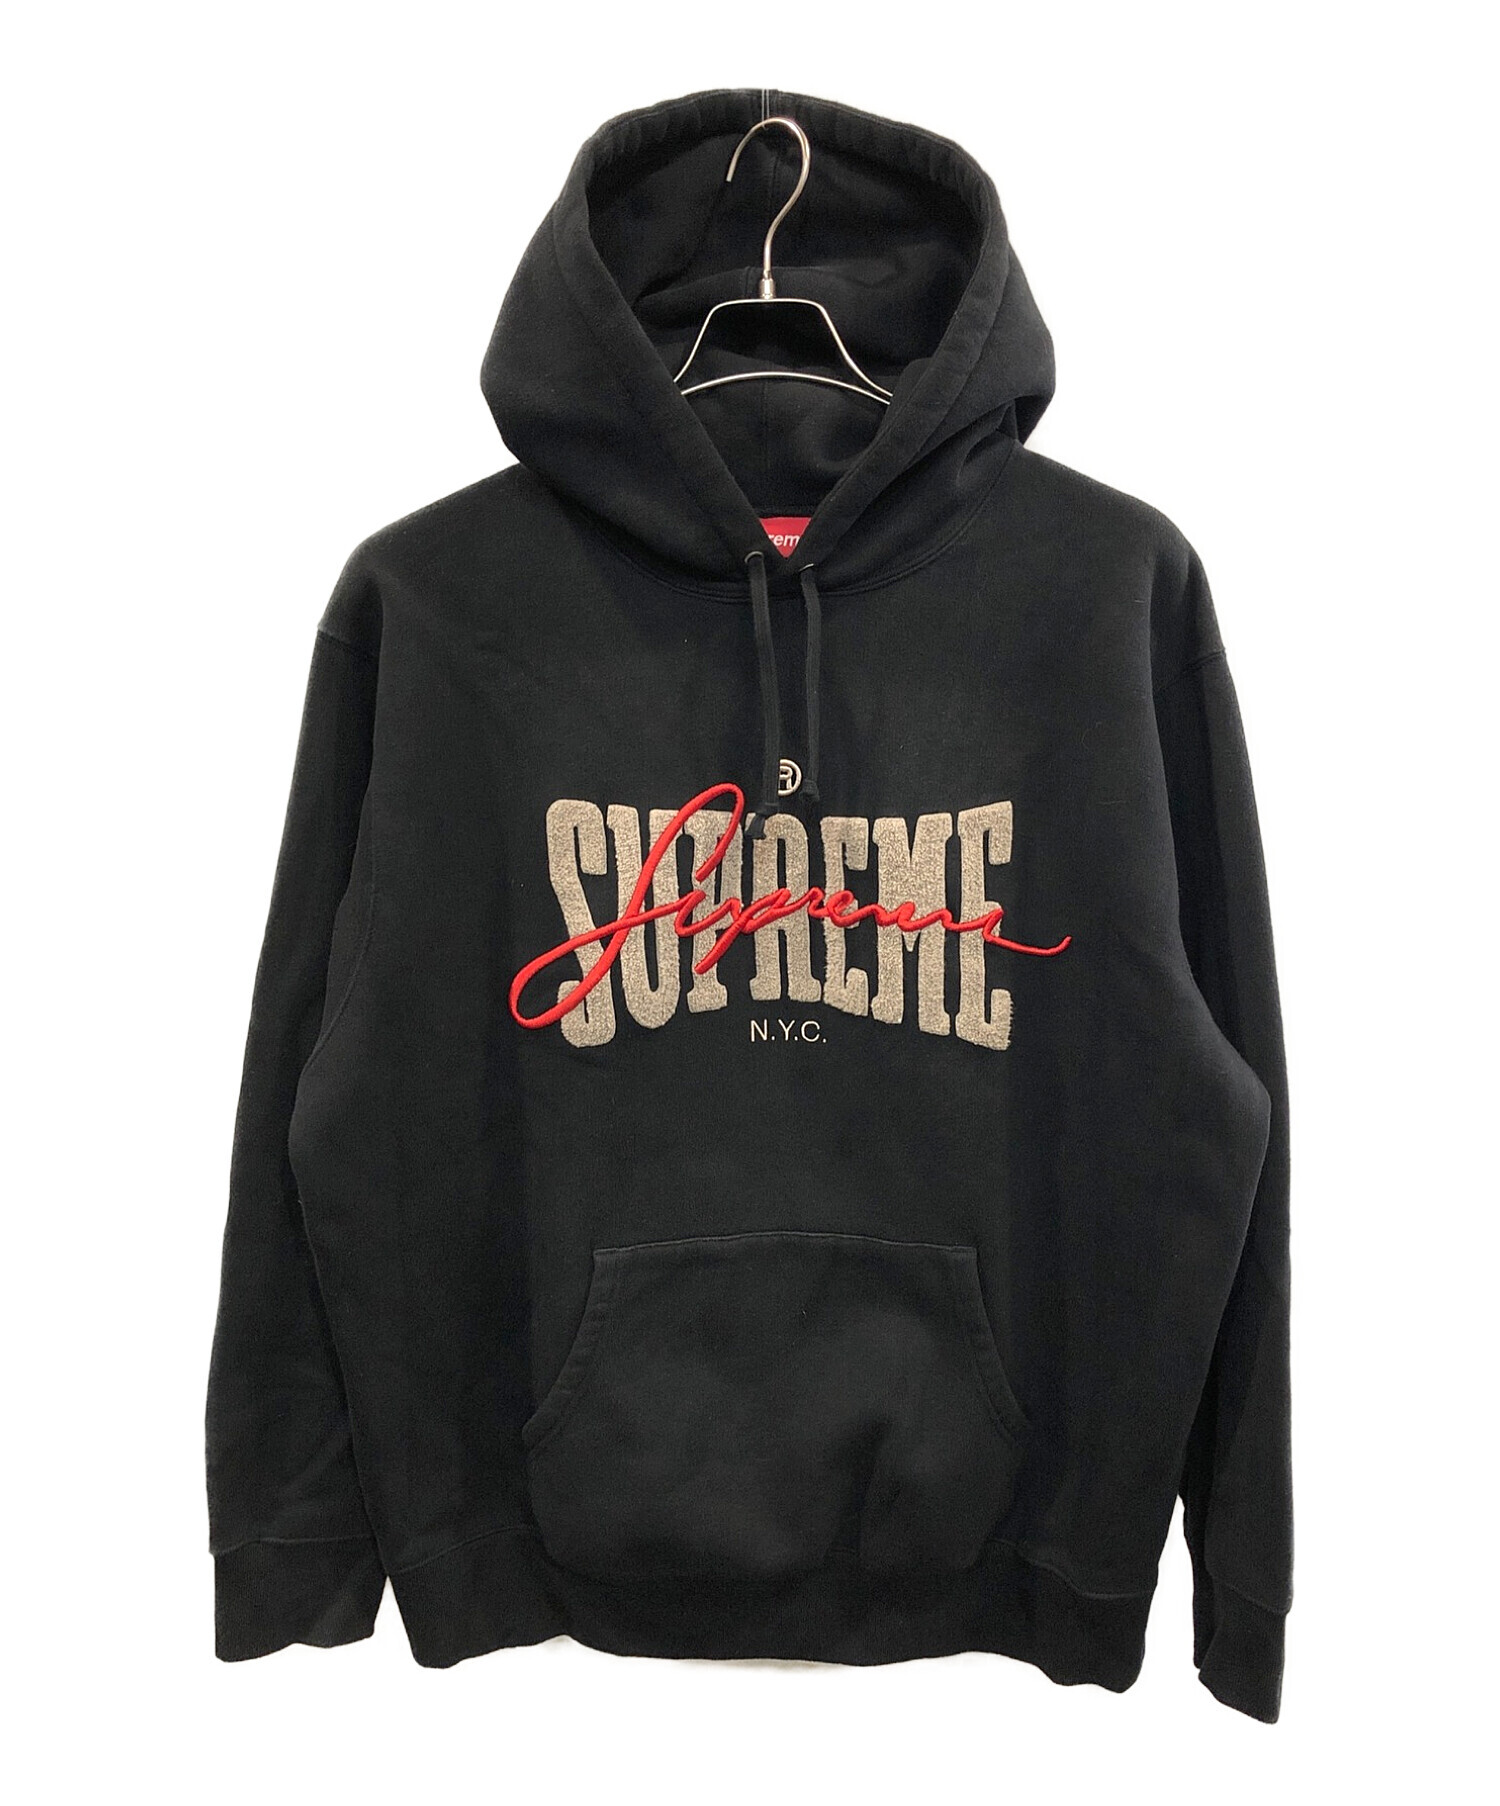 Supreme (シュプリーム) embroidered chenille hooded sweatshirt（エンブロイダード シェニール  フーディー スウェットシャツ） ブラック サイズ:Ⅼ